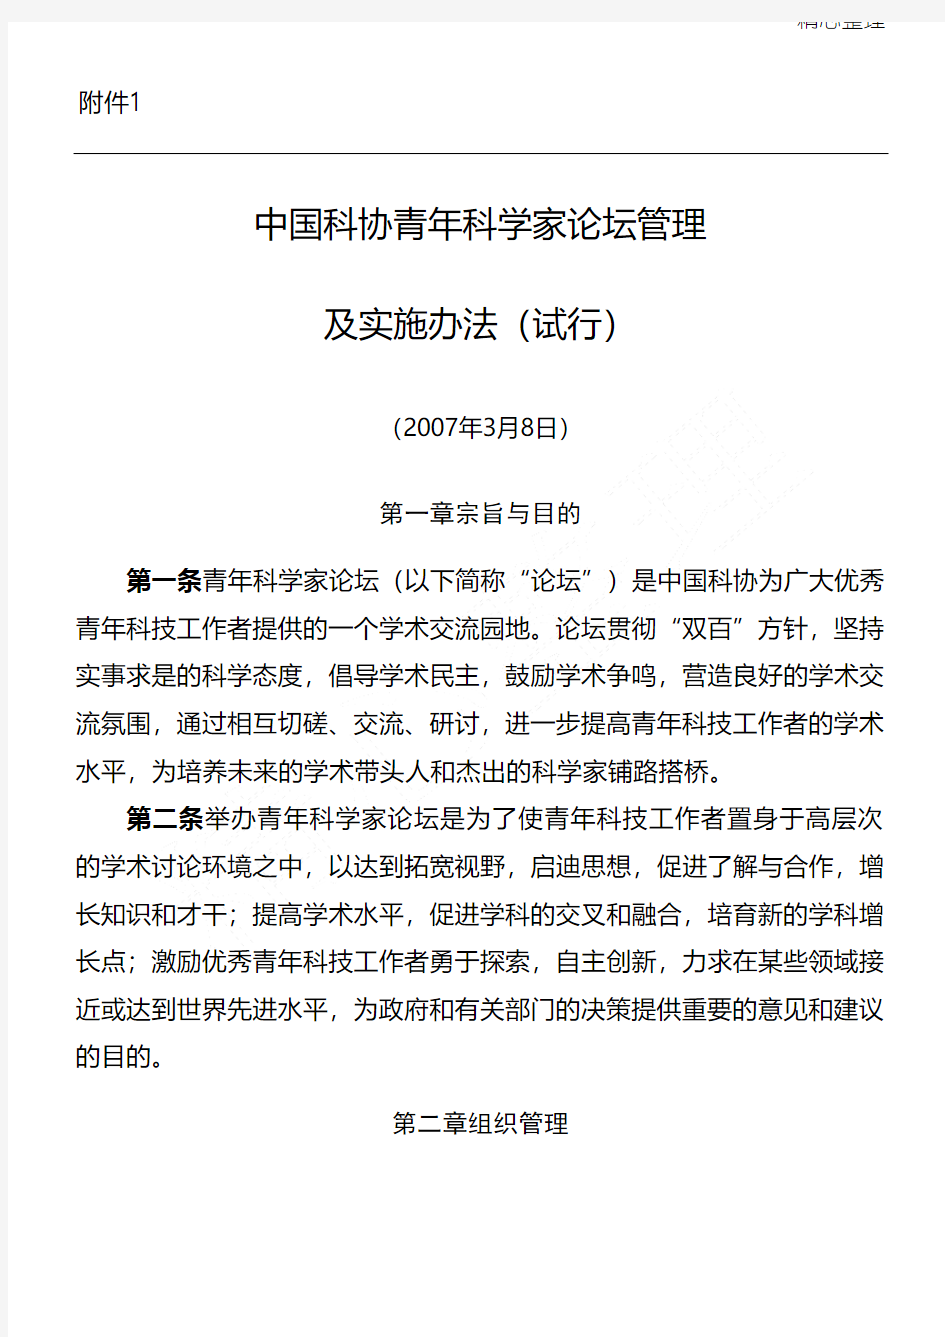 中国科协青年科学家论坛管理及实施办法(试行)